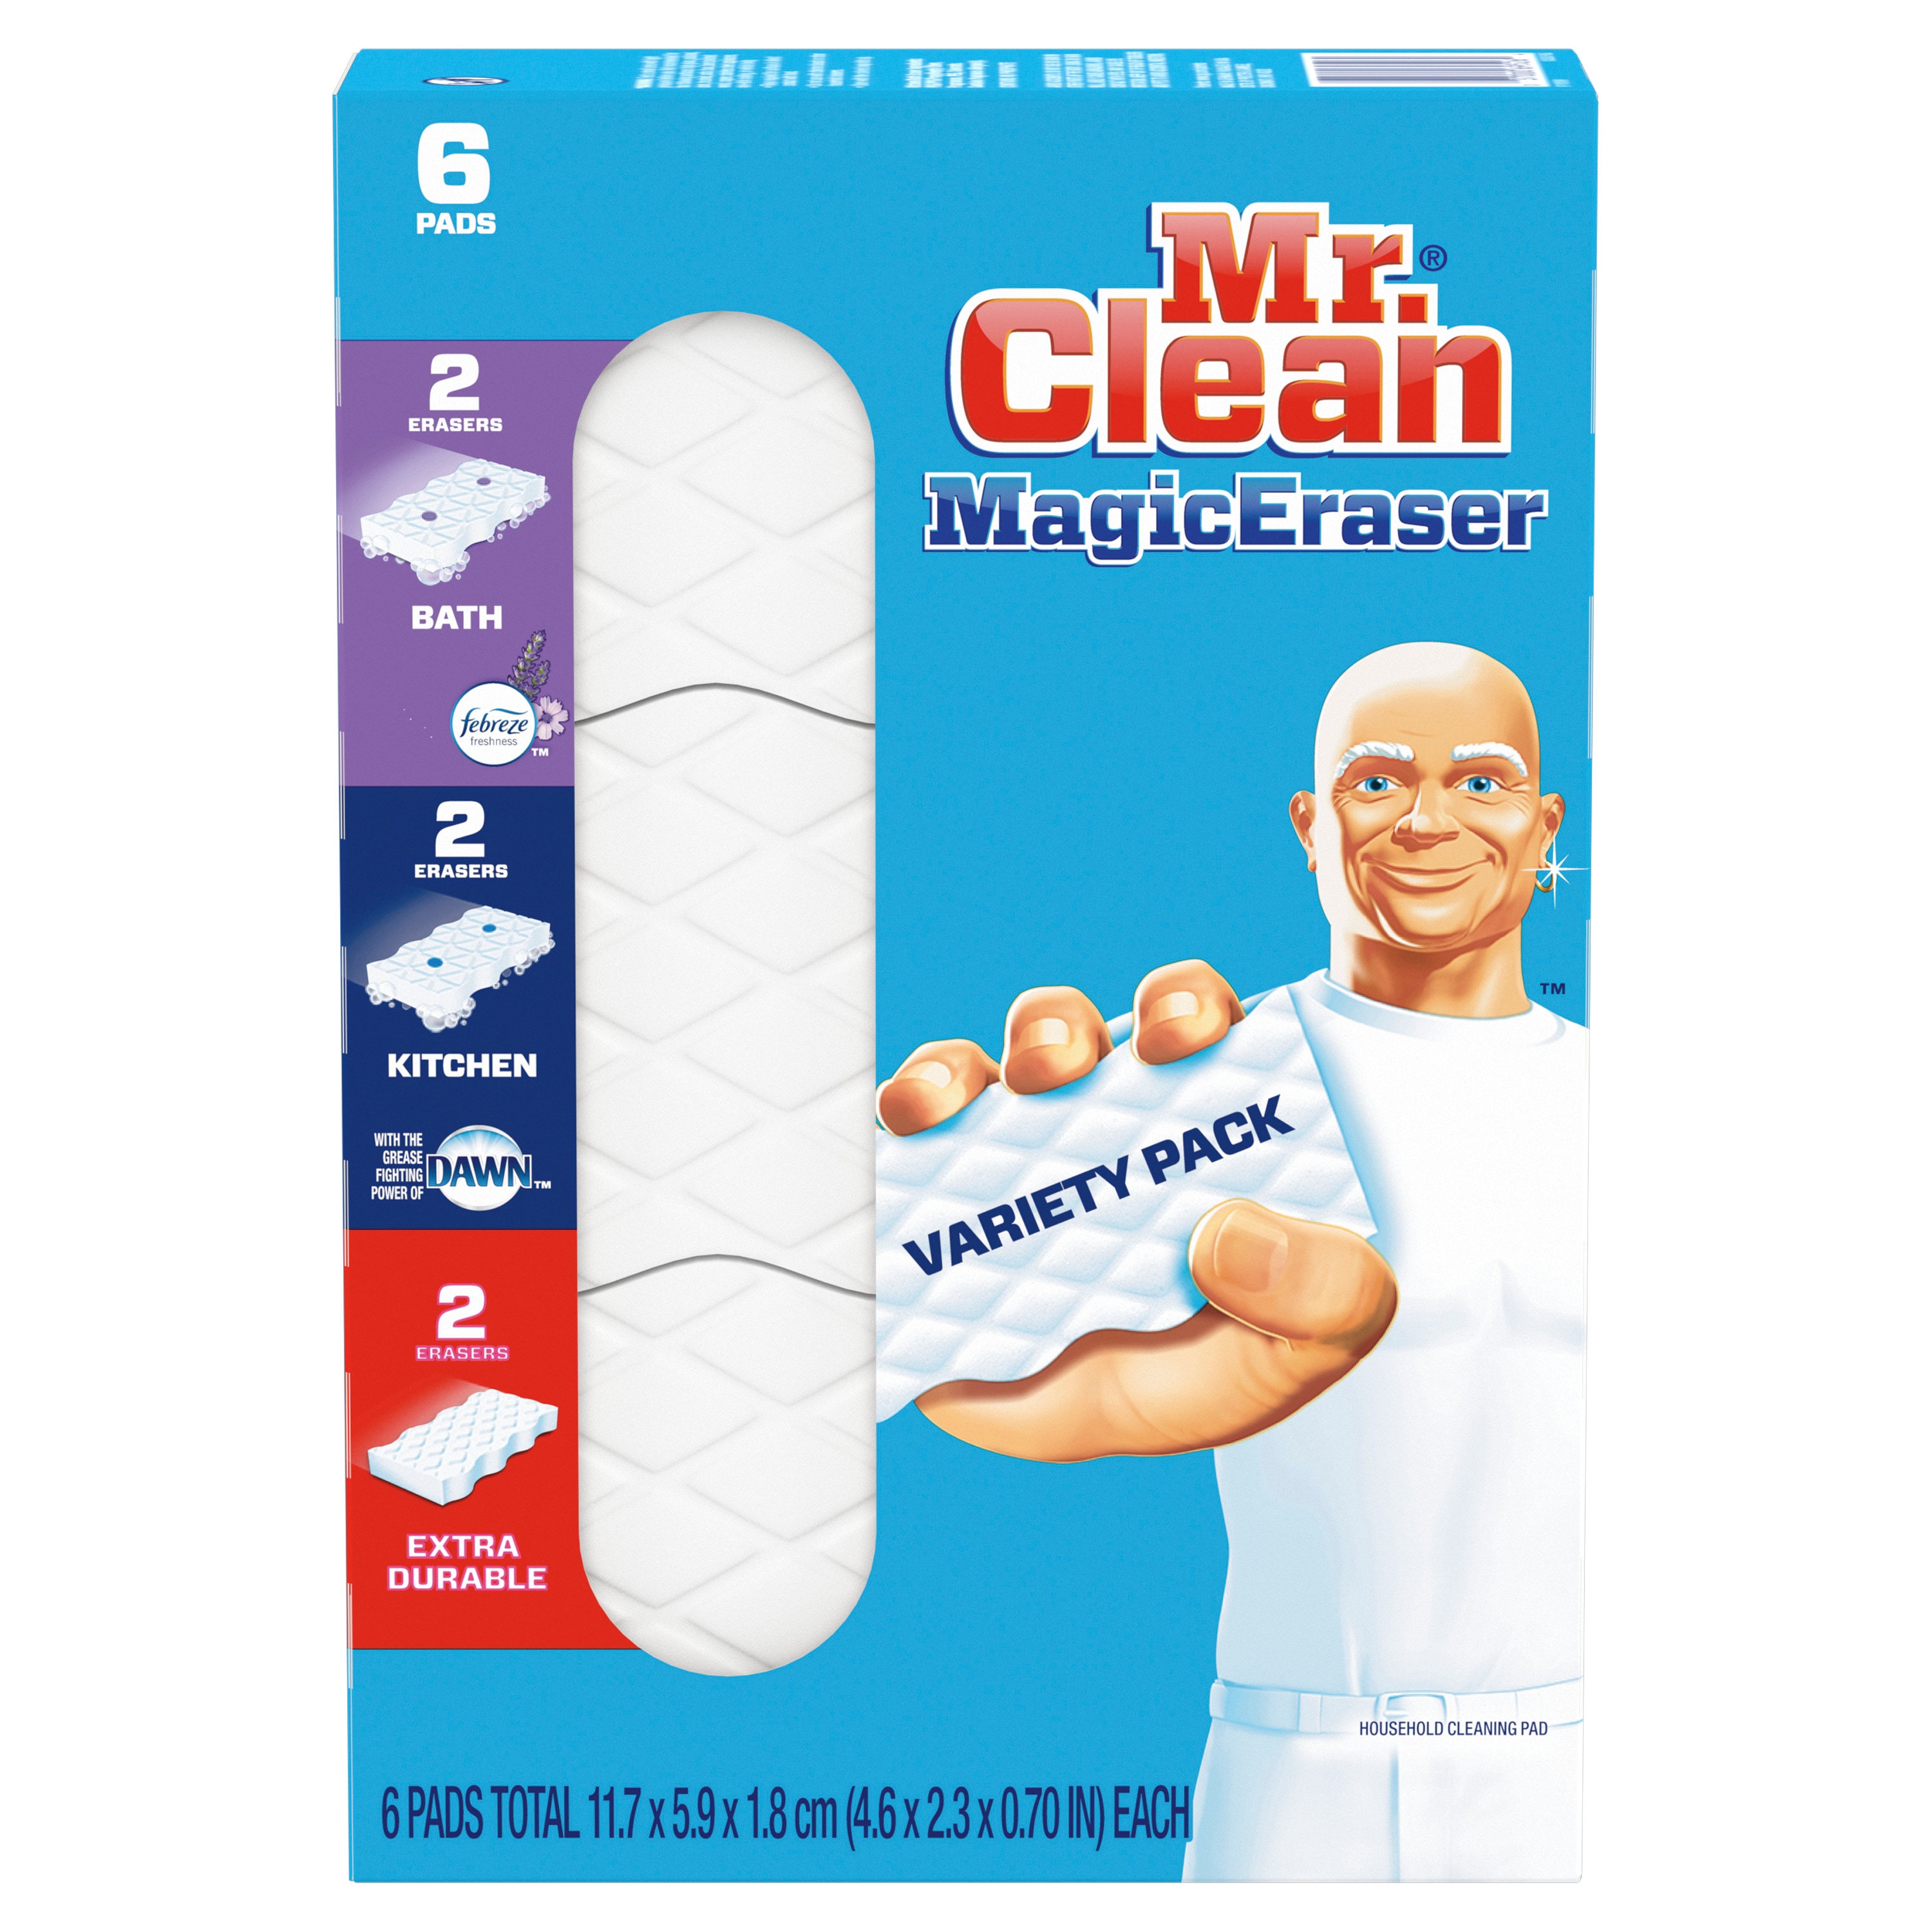 Bộ lau chùi Mr. Clean Magic Eraser đa dạng 12 gói - Bộ lau chùi Mr. Clean Magic Eraser đa dạng 12 gói sẽ giúp bạn dễ dàng thực hiện quá trình lau chùi nhà cửa một cách nhanh chóng và hiệu quả. Với các tấm lau vết bẩn này, bạn sẽ không còn phải lo lắng về những vết bẩn cứng đầu trên các bề mặt. Hãy trải nghiệm bộ sản phẩm đa dạng của chúng tôi và cảm nhận sự khác biệt.